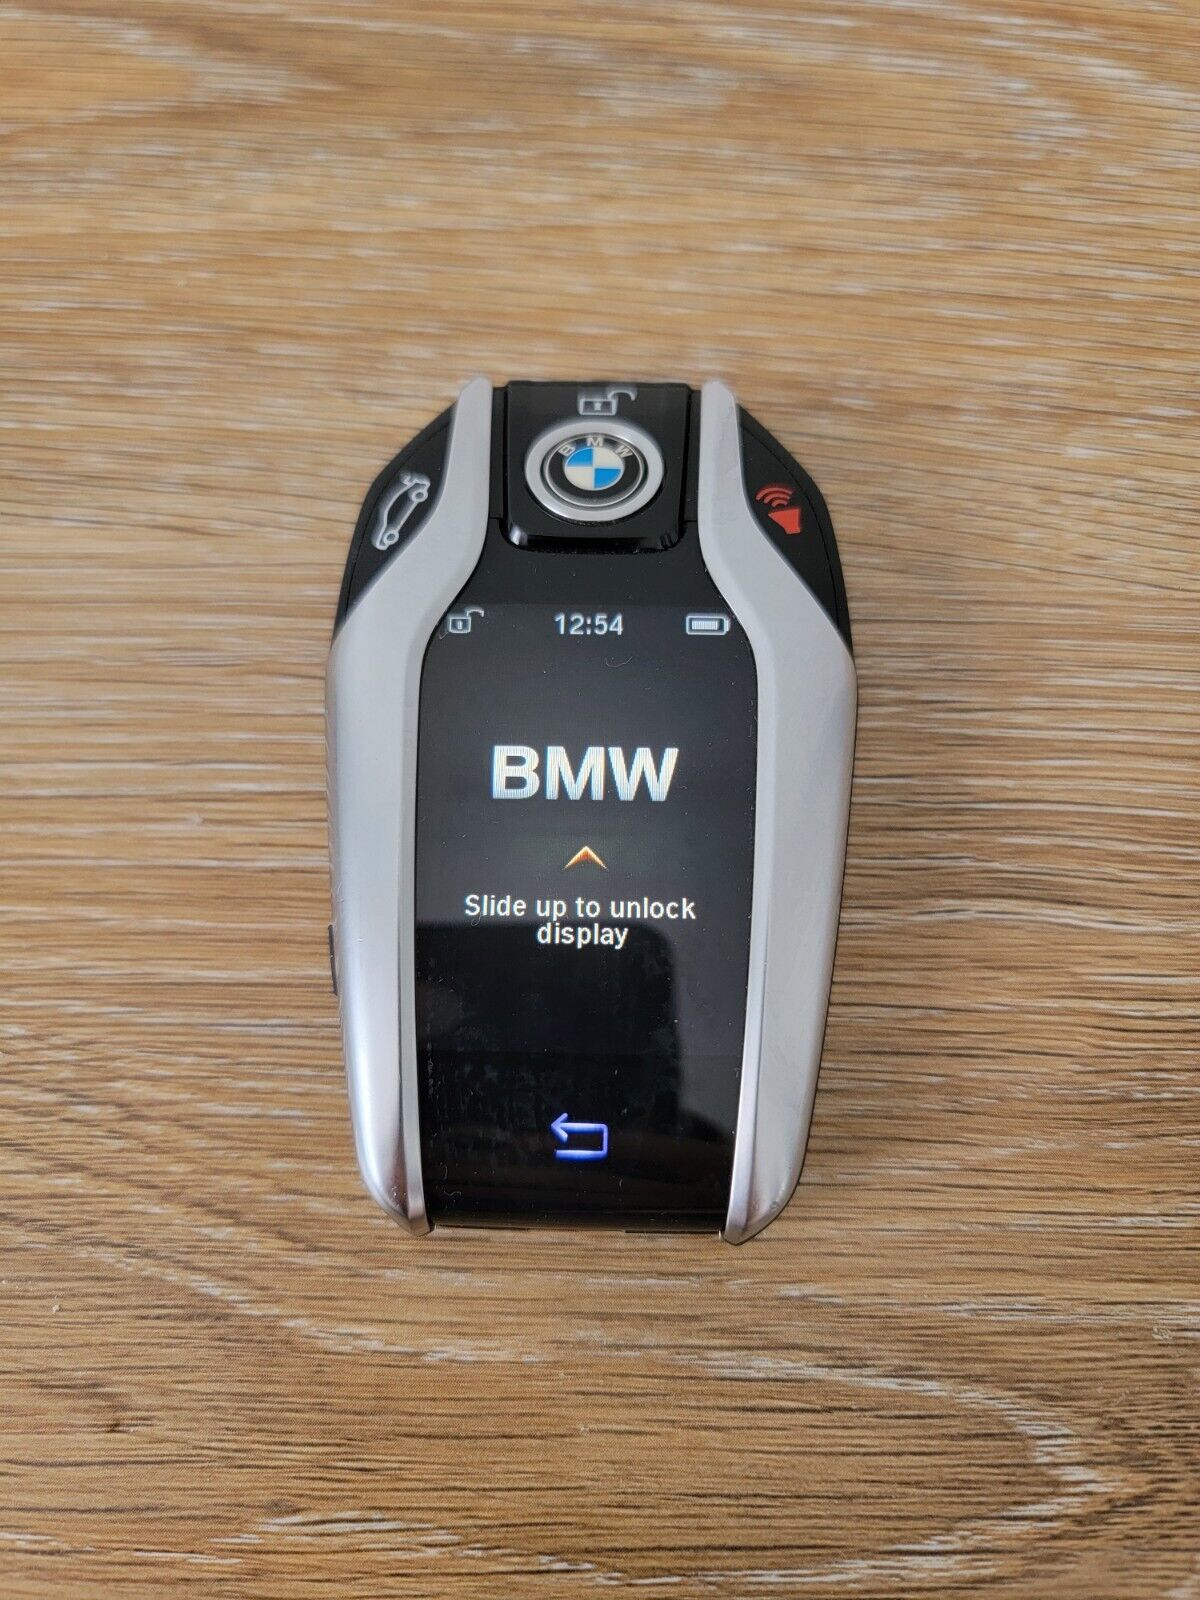 OEM BMW digital screen keyless entry smart remote car key fob v7